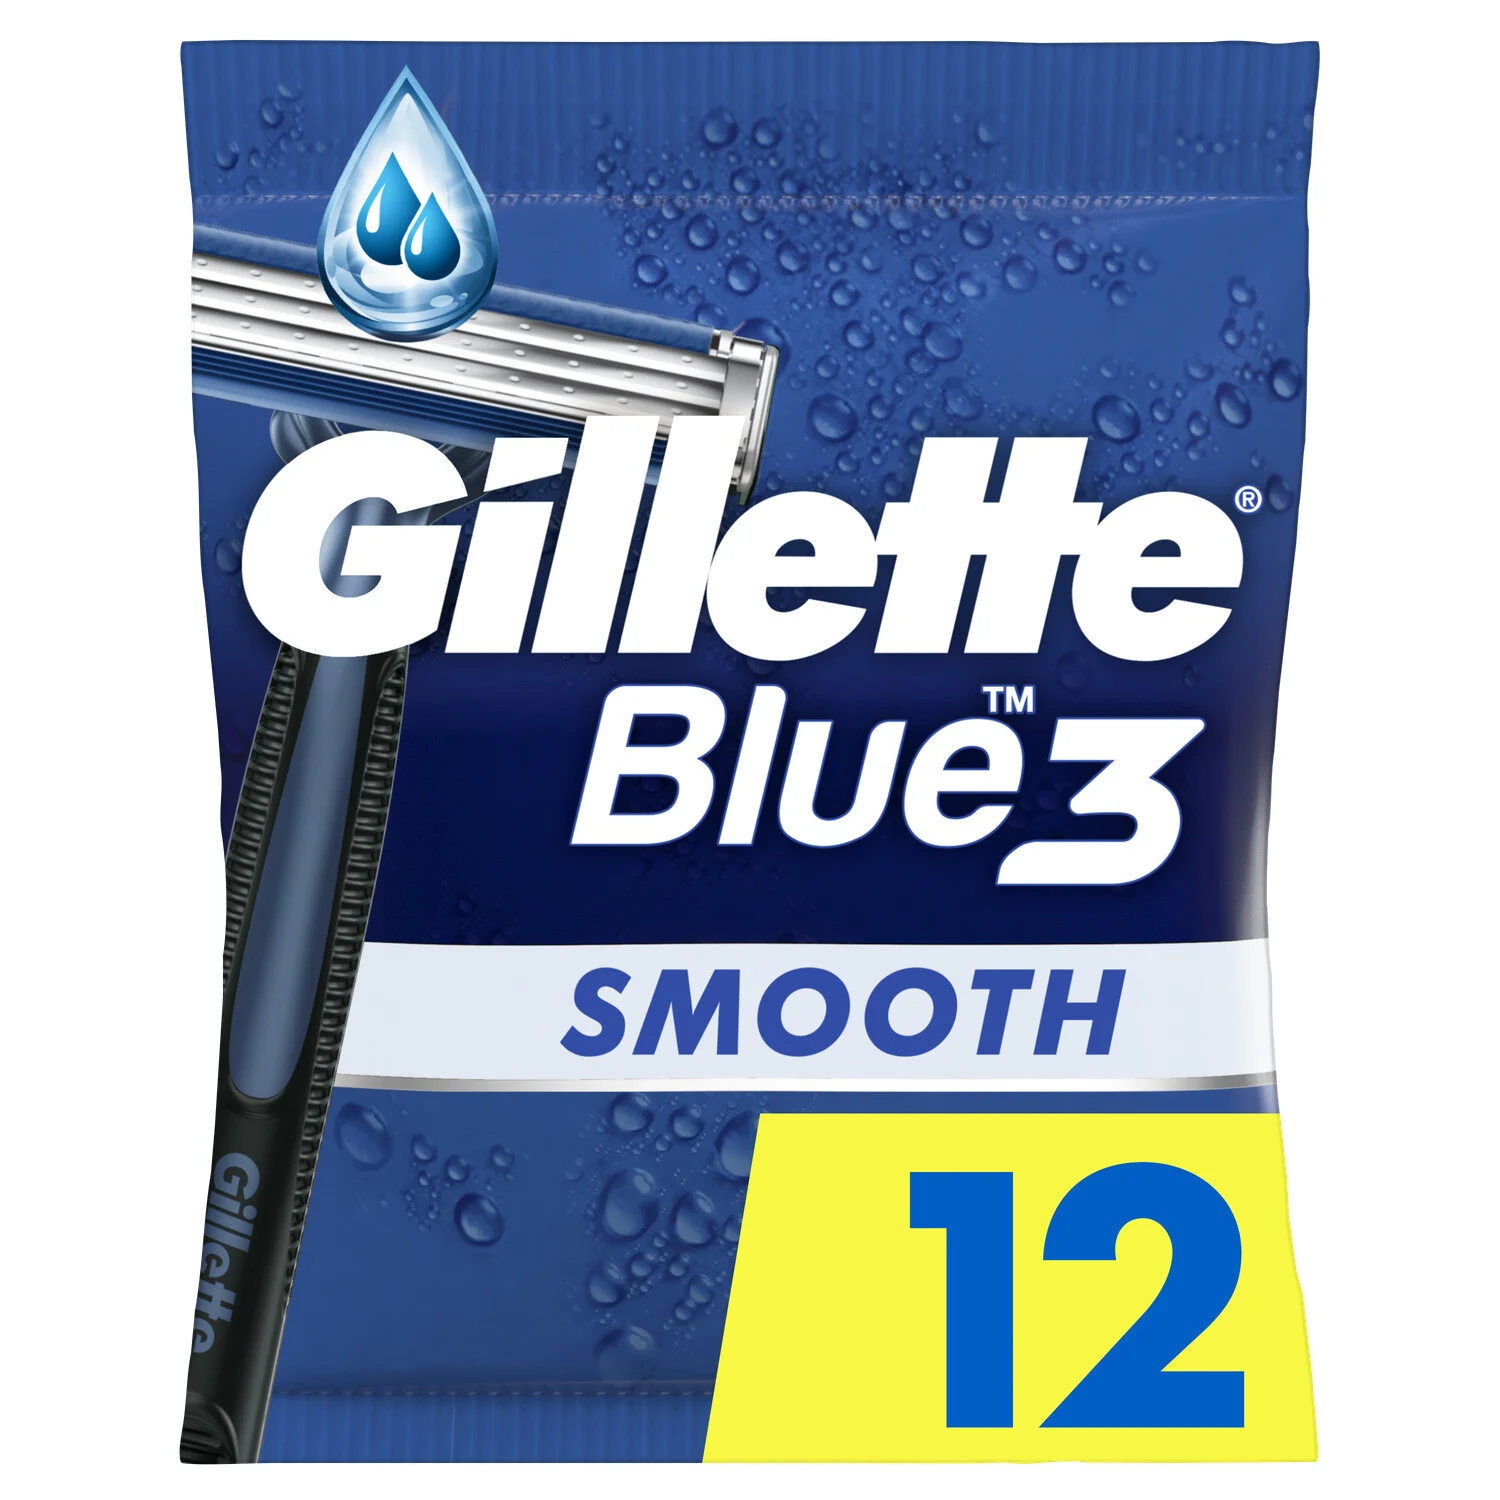 3x4 Jet Smooth Blue3 Gillette